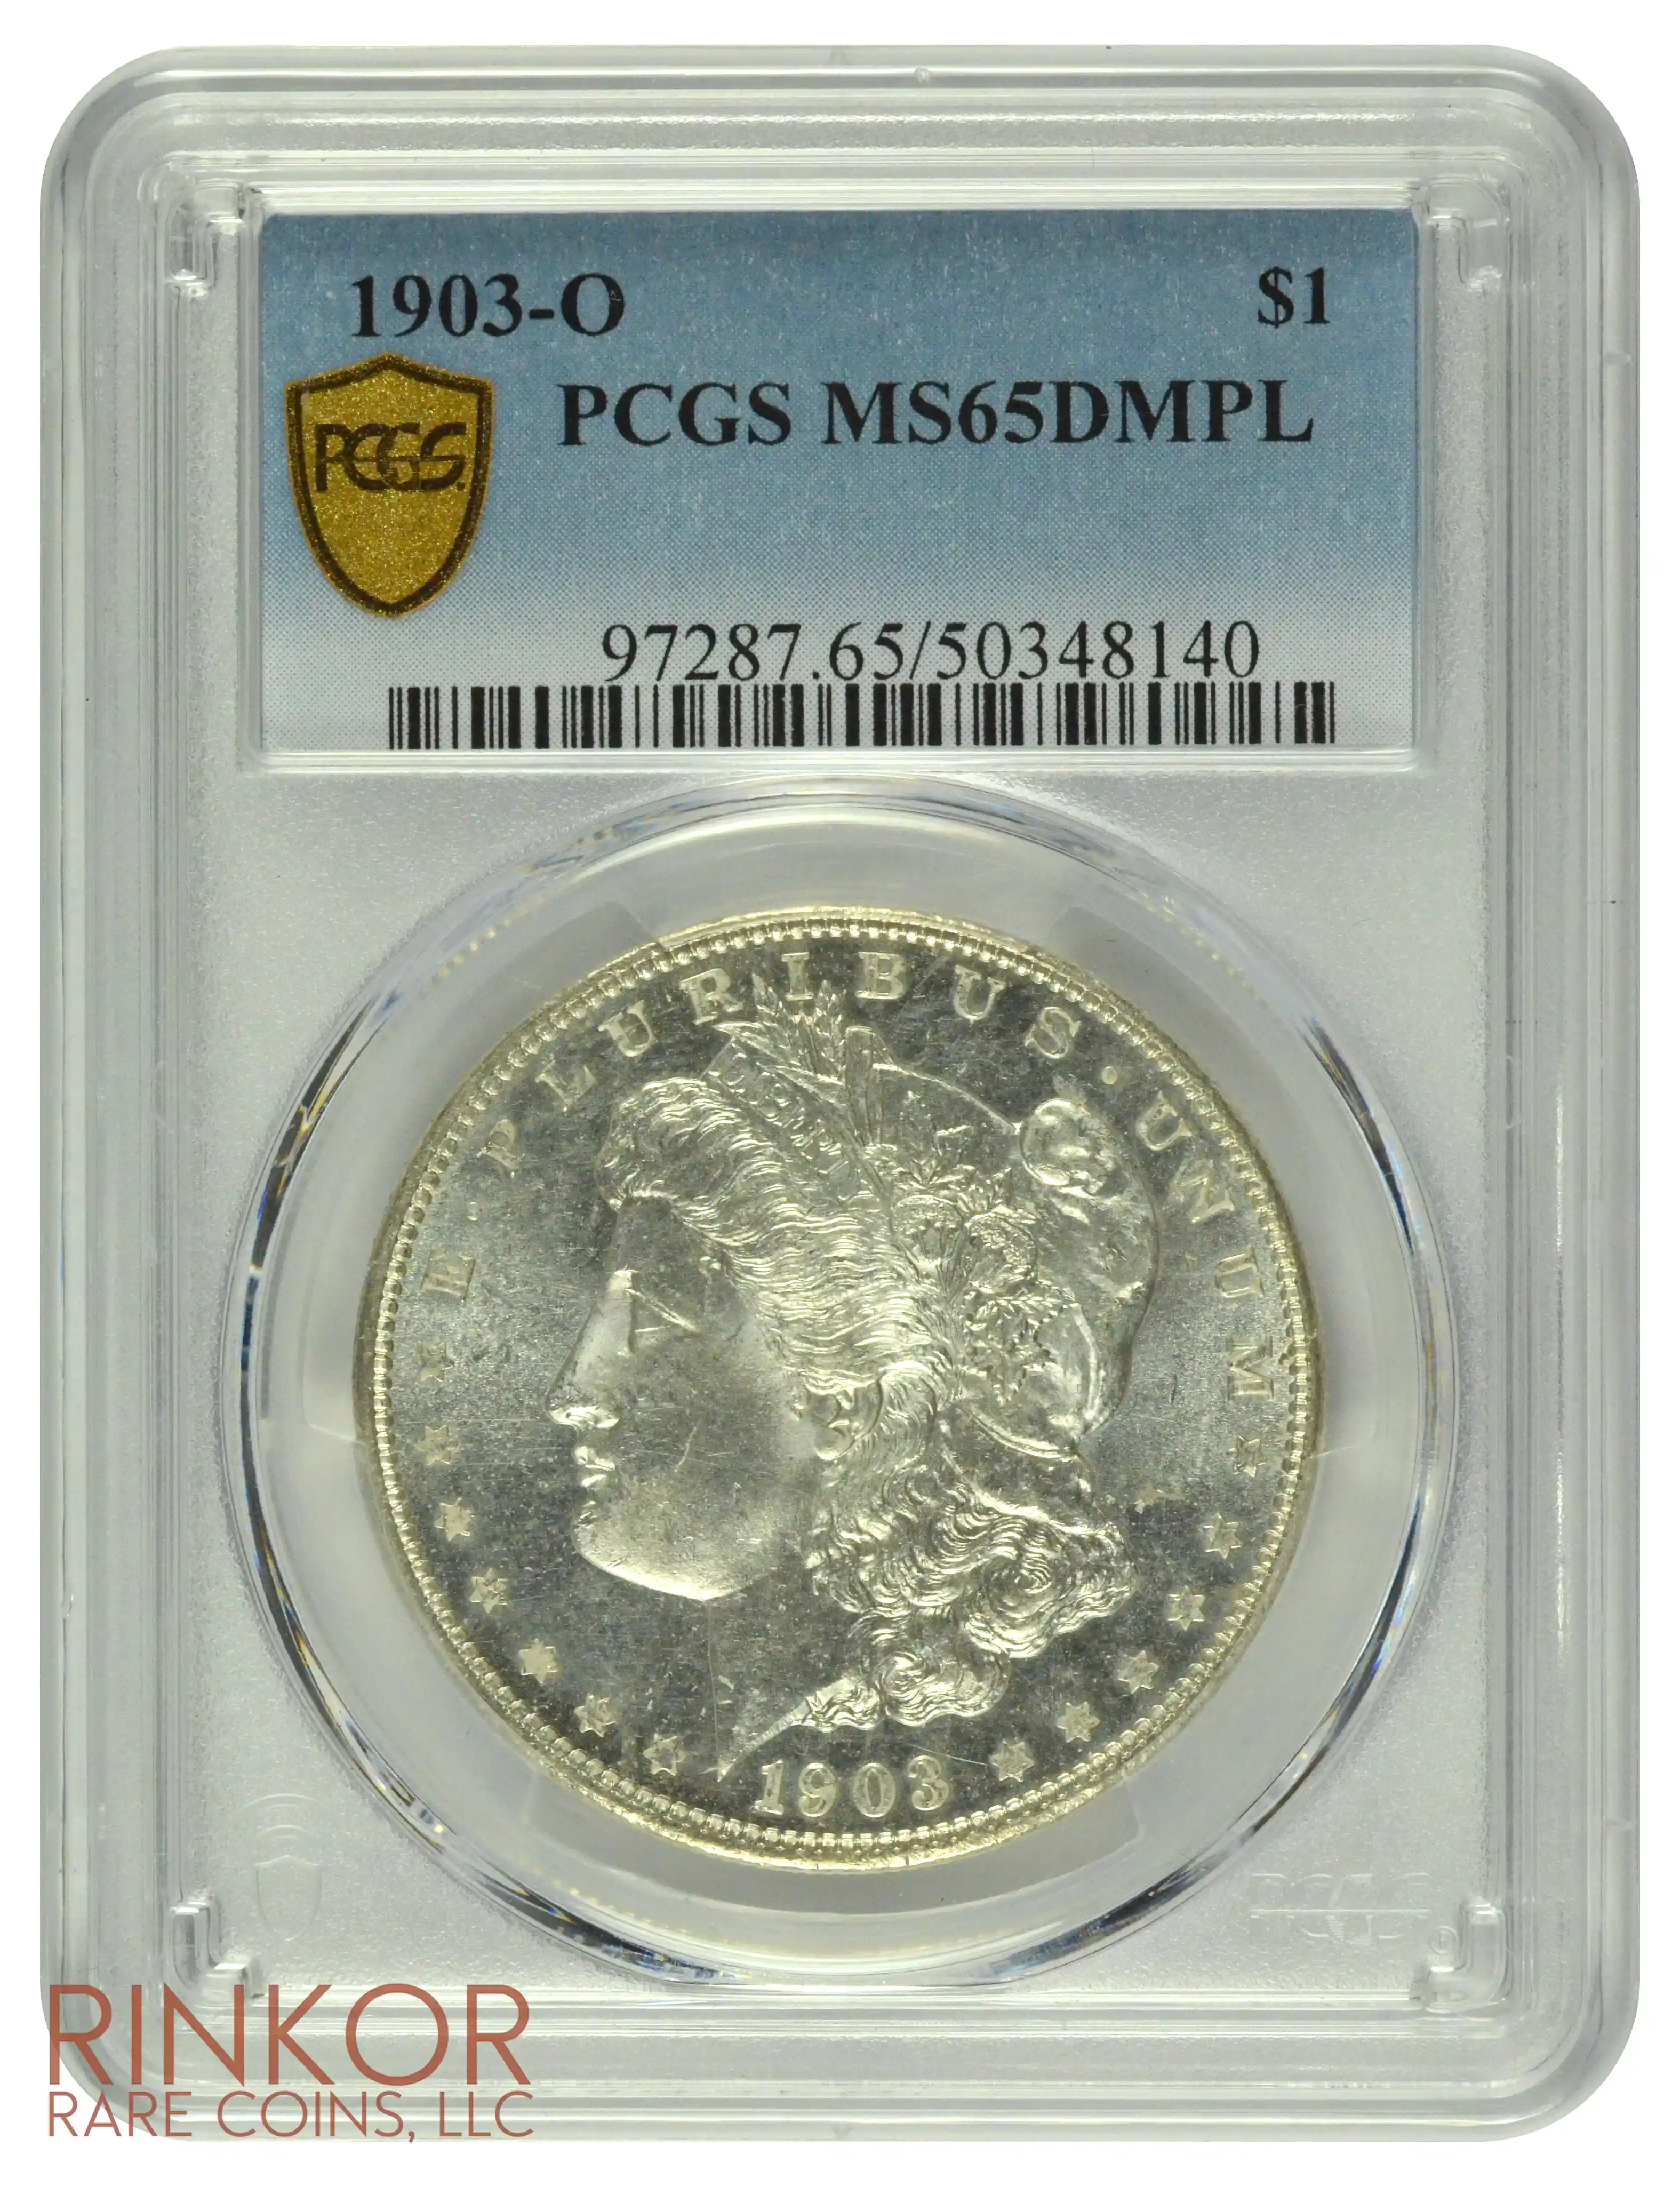 1903-O $1 PCGS MS 65 DMPL